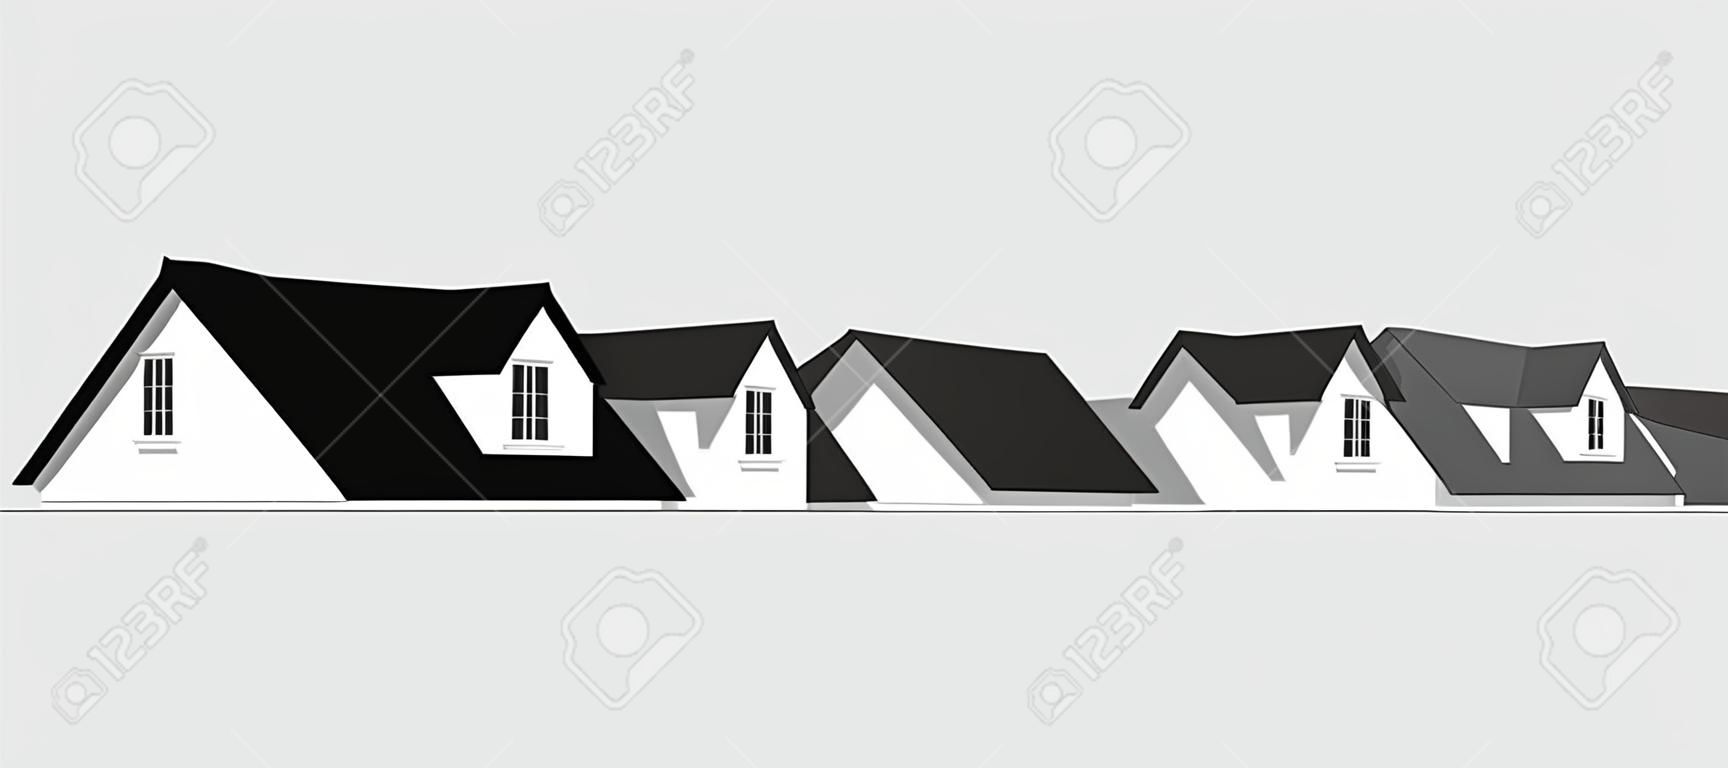 Haus-Symbol Grenze. Eine Reihe von Häusern mit 2 Dachgauben zu verkaufen, für Immobilien, Bau, Architektur, Design zu Hause reparieren.